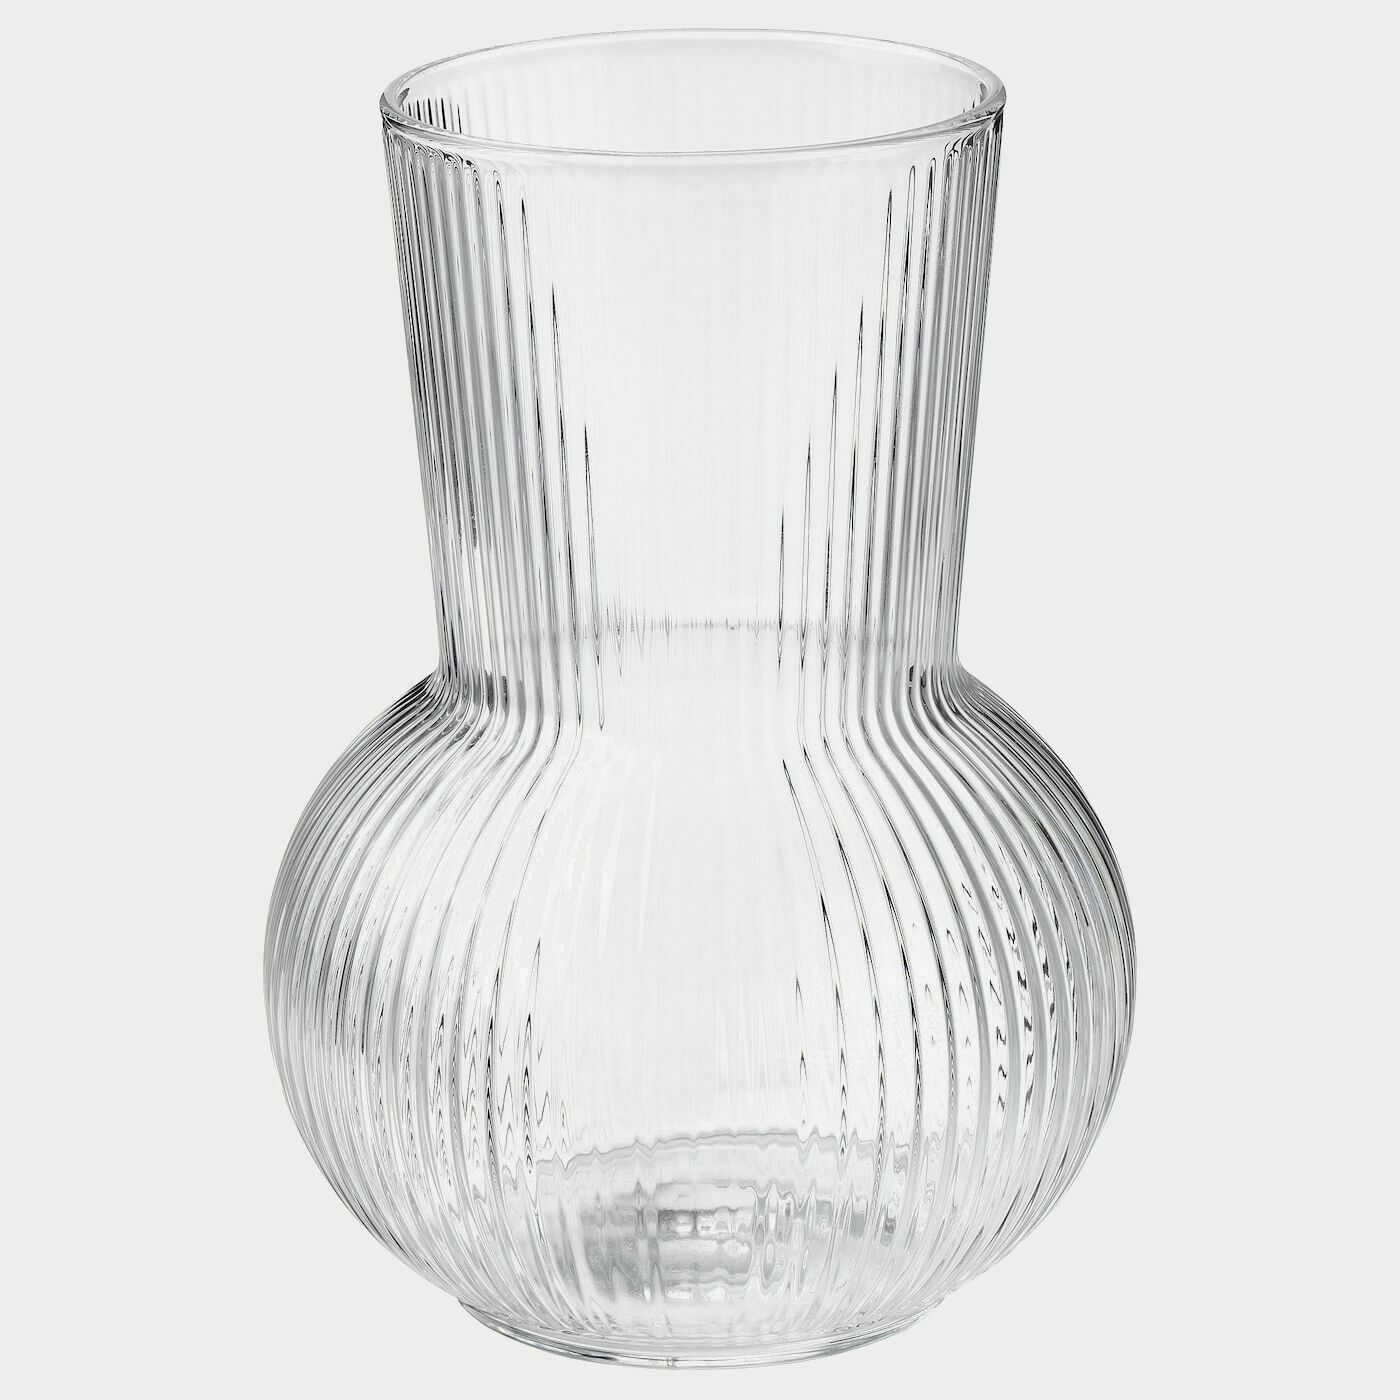 PÅDRAG Vase  -  - Möbel Ideen für dein Zuhause von Home Trends. Möbel Trends von Social Media Influencer für dein Skandi Zuhause.